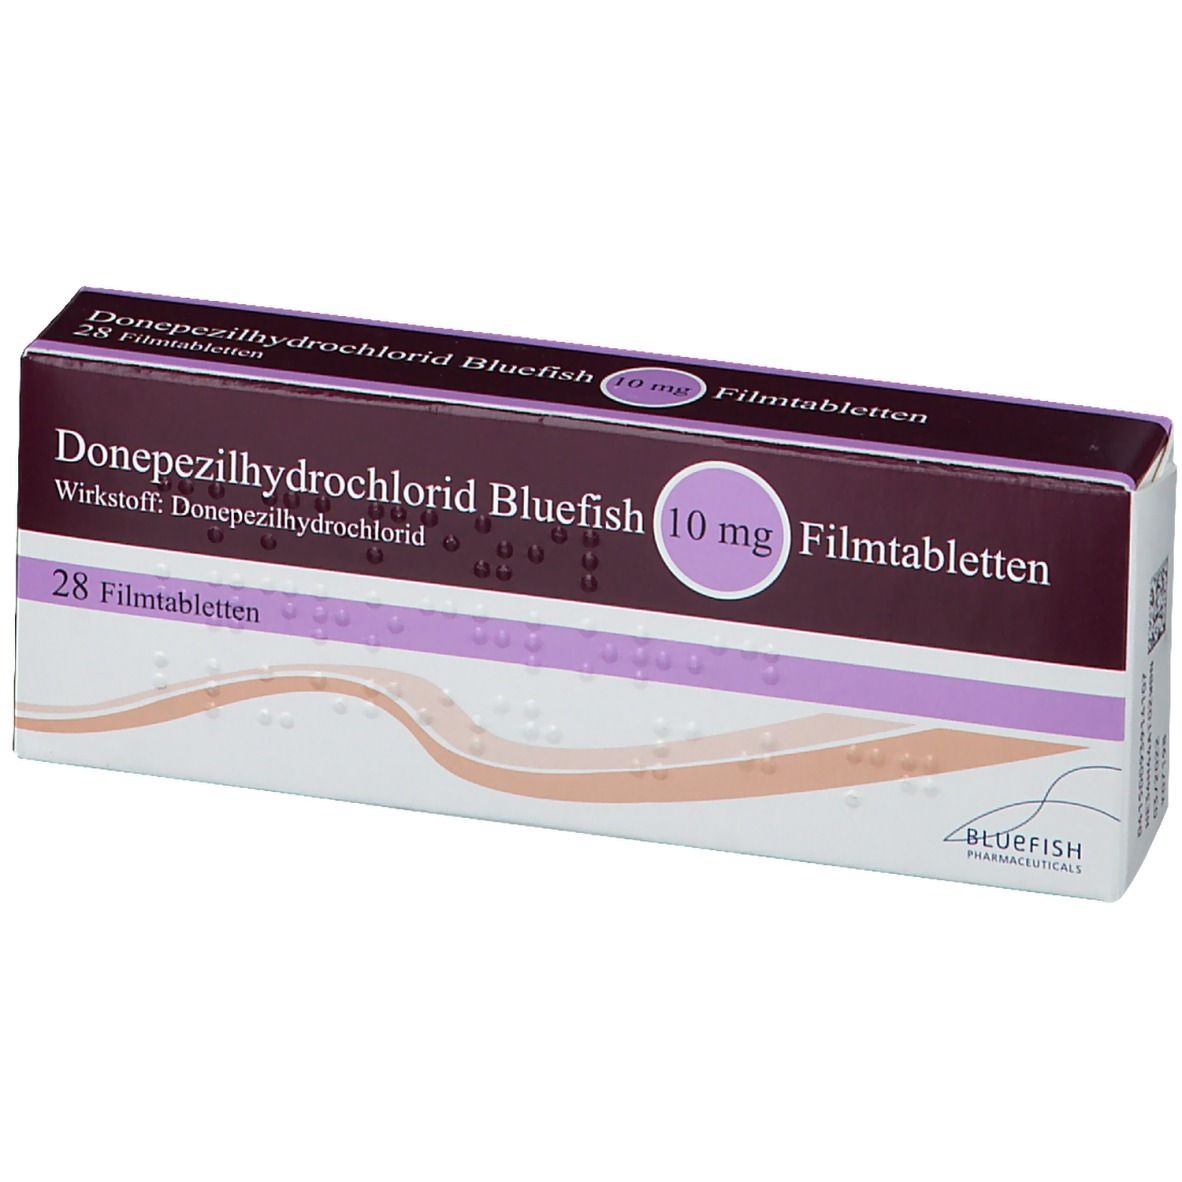 Donepezilhydrochlorid Bluefish 10 mg